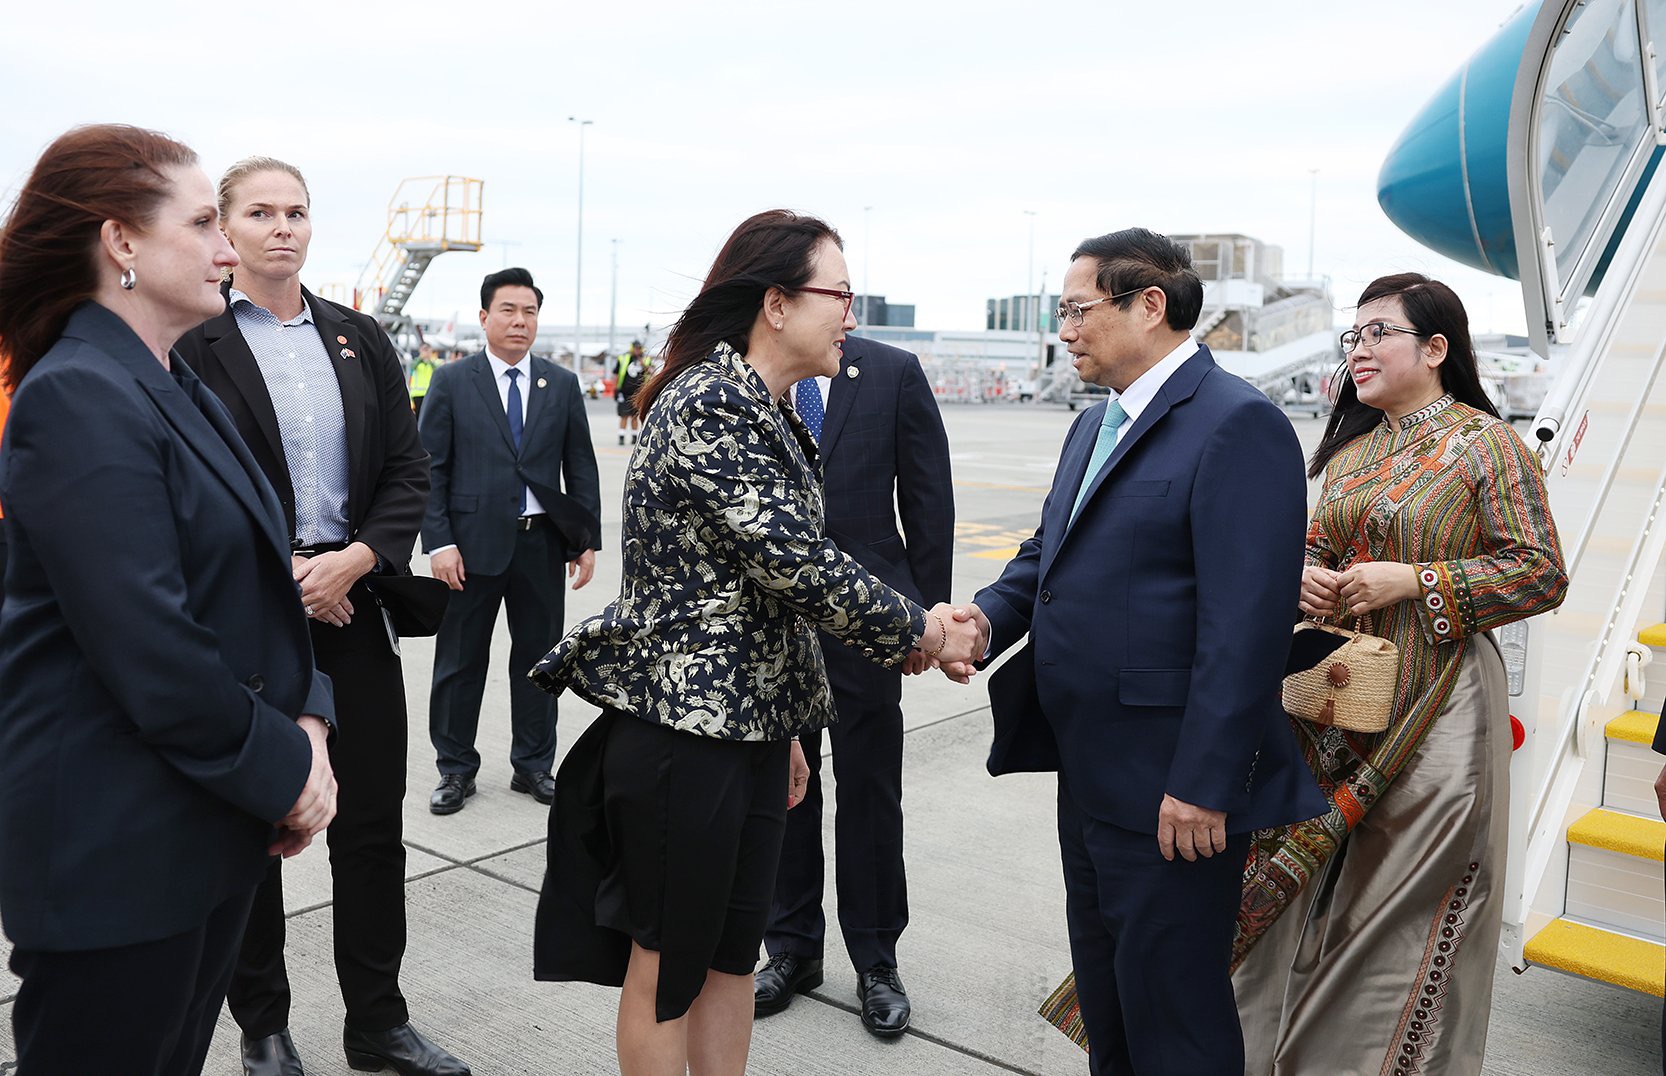 Thủ tướng Chính phủ Phạm Minh Chính và Phu nhân Lê Thị Bích Trân, cùng đoàn đại biểu cấp cao Việt Nam đã tới sân bay Auckland, để thăm chính thức New Zealand từ ngày 10 đến ngày 11/3 theo lời mời của Thủ tướng New Zealand Christopher Luxon - Ảnh: VGP/Nhật Bắc